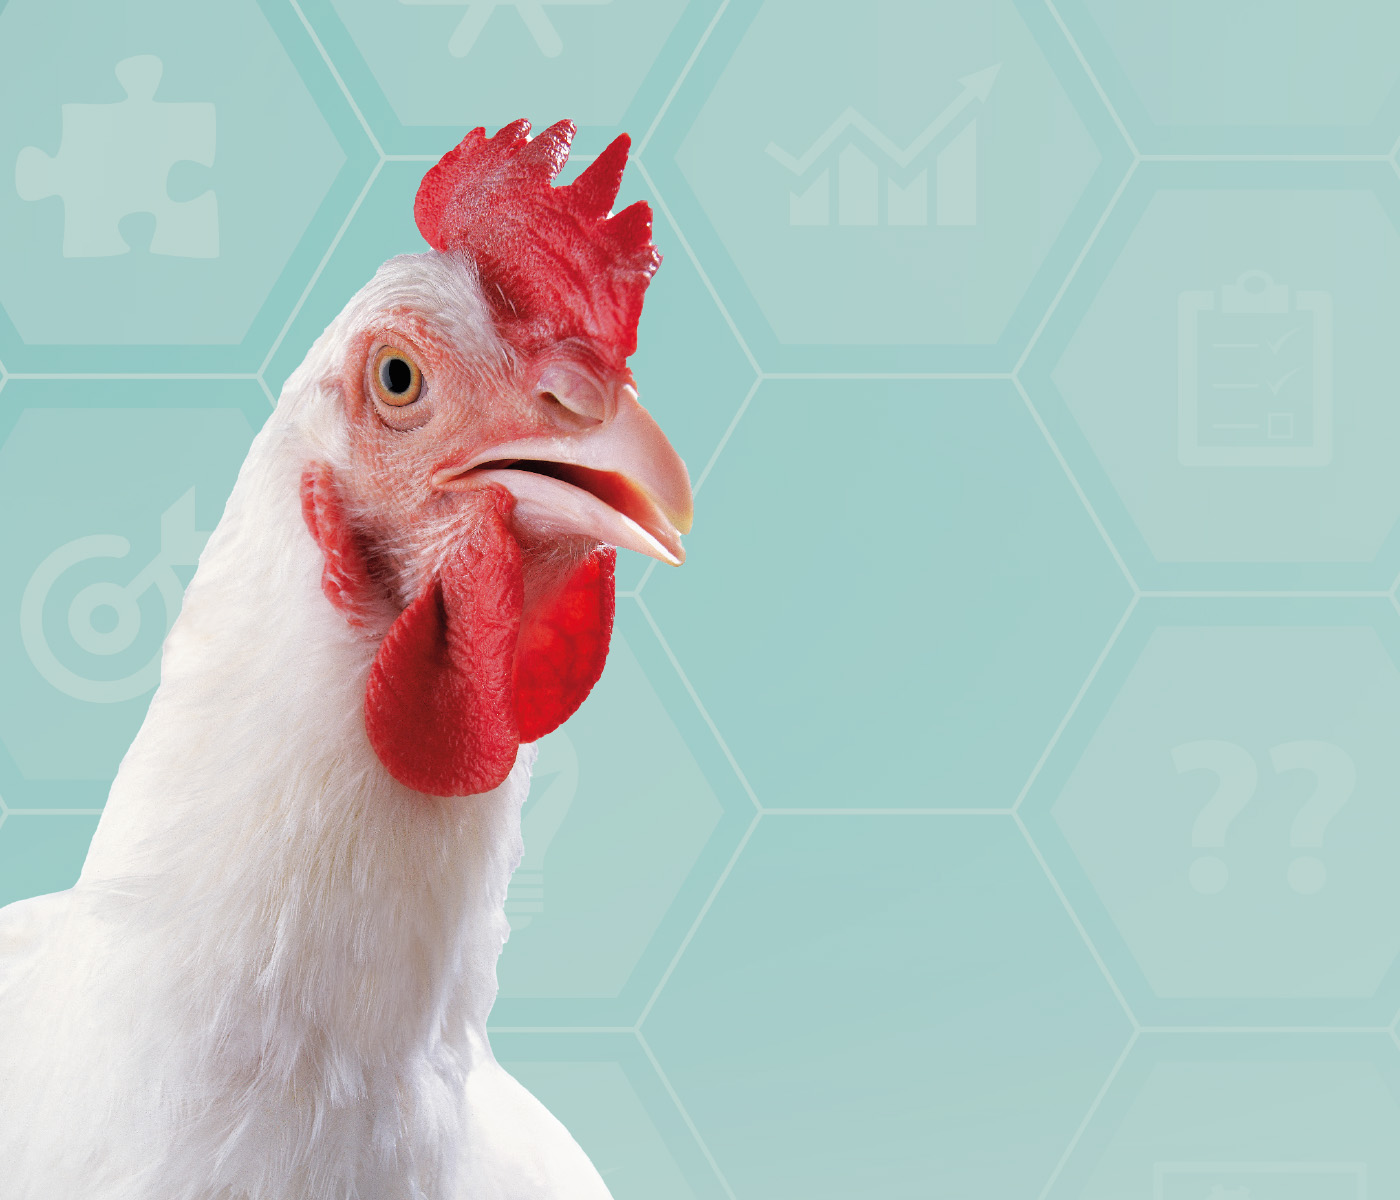 Uso de antimicrobianos em avicultura: tendências e desafios